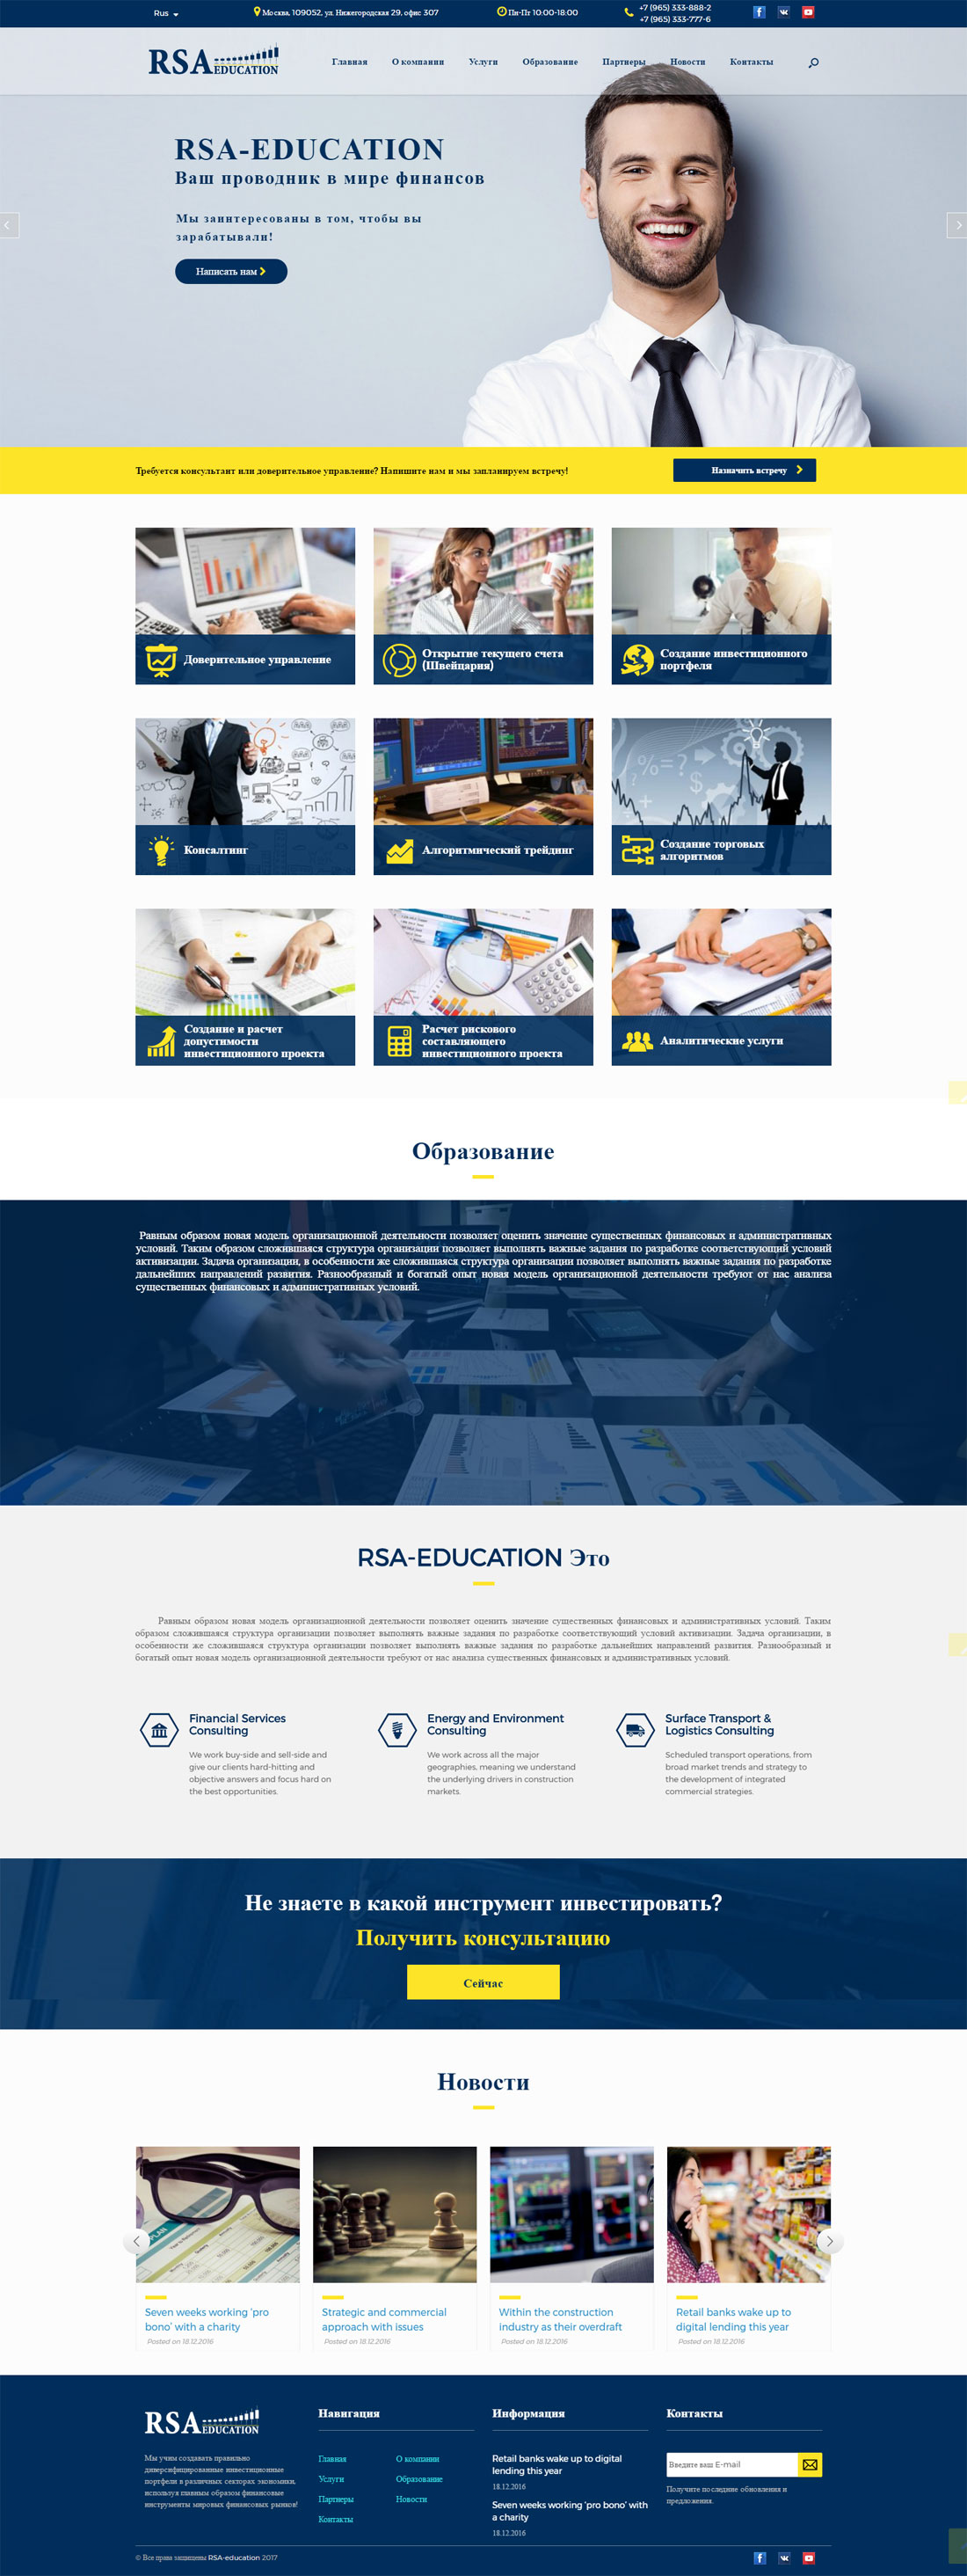 RSA-education-1